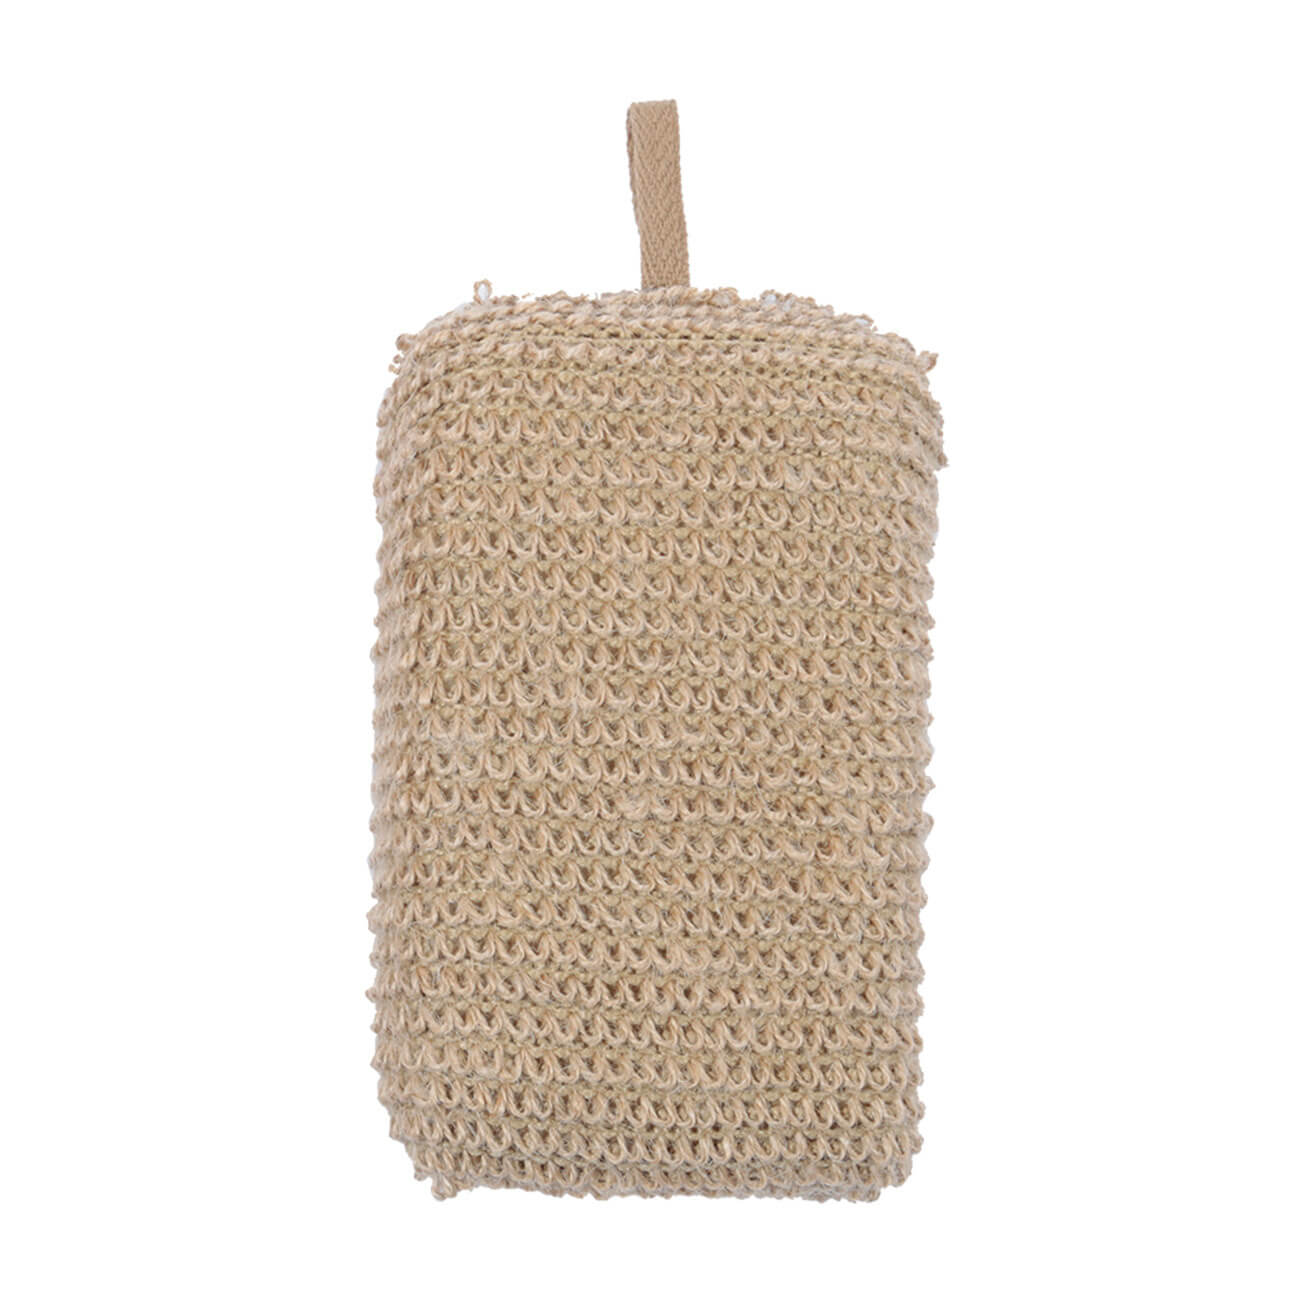 Мочалка-губка для мытья тела, 9х14 см, конопляное волокно/полиуретан, бежевая, Eco life